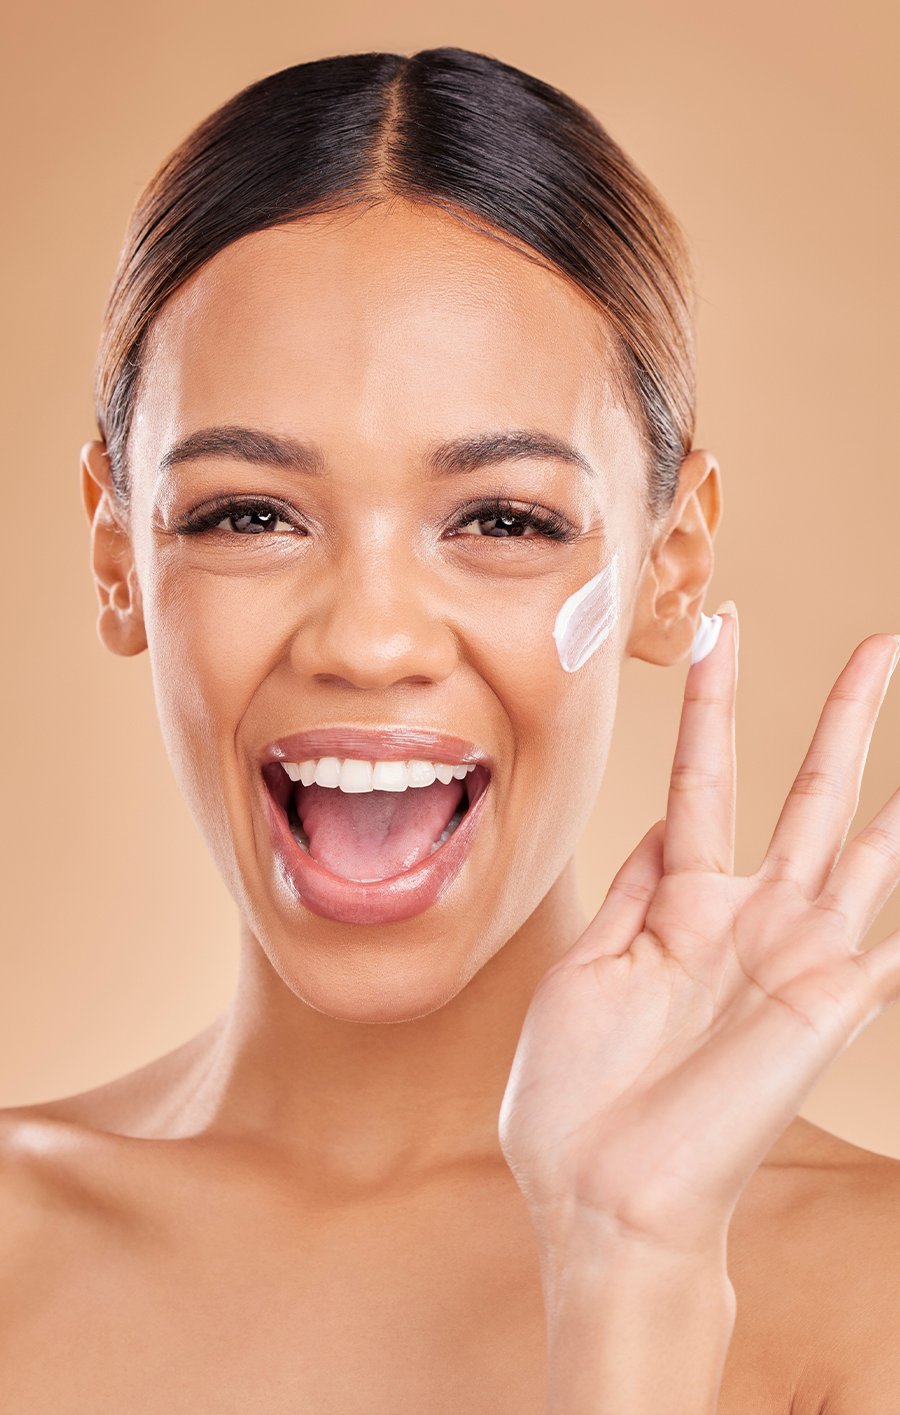 संवेदनशील त्वचा के लिए उत्पाद: त्वचा की देखभाल और बेदाग़ लुक के लिए तकनीकें